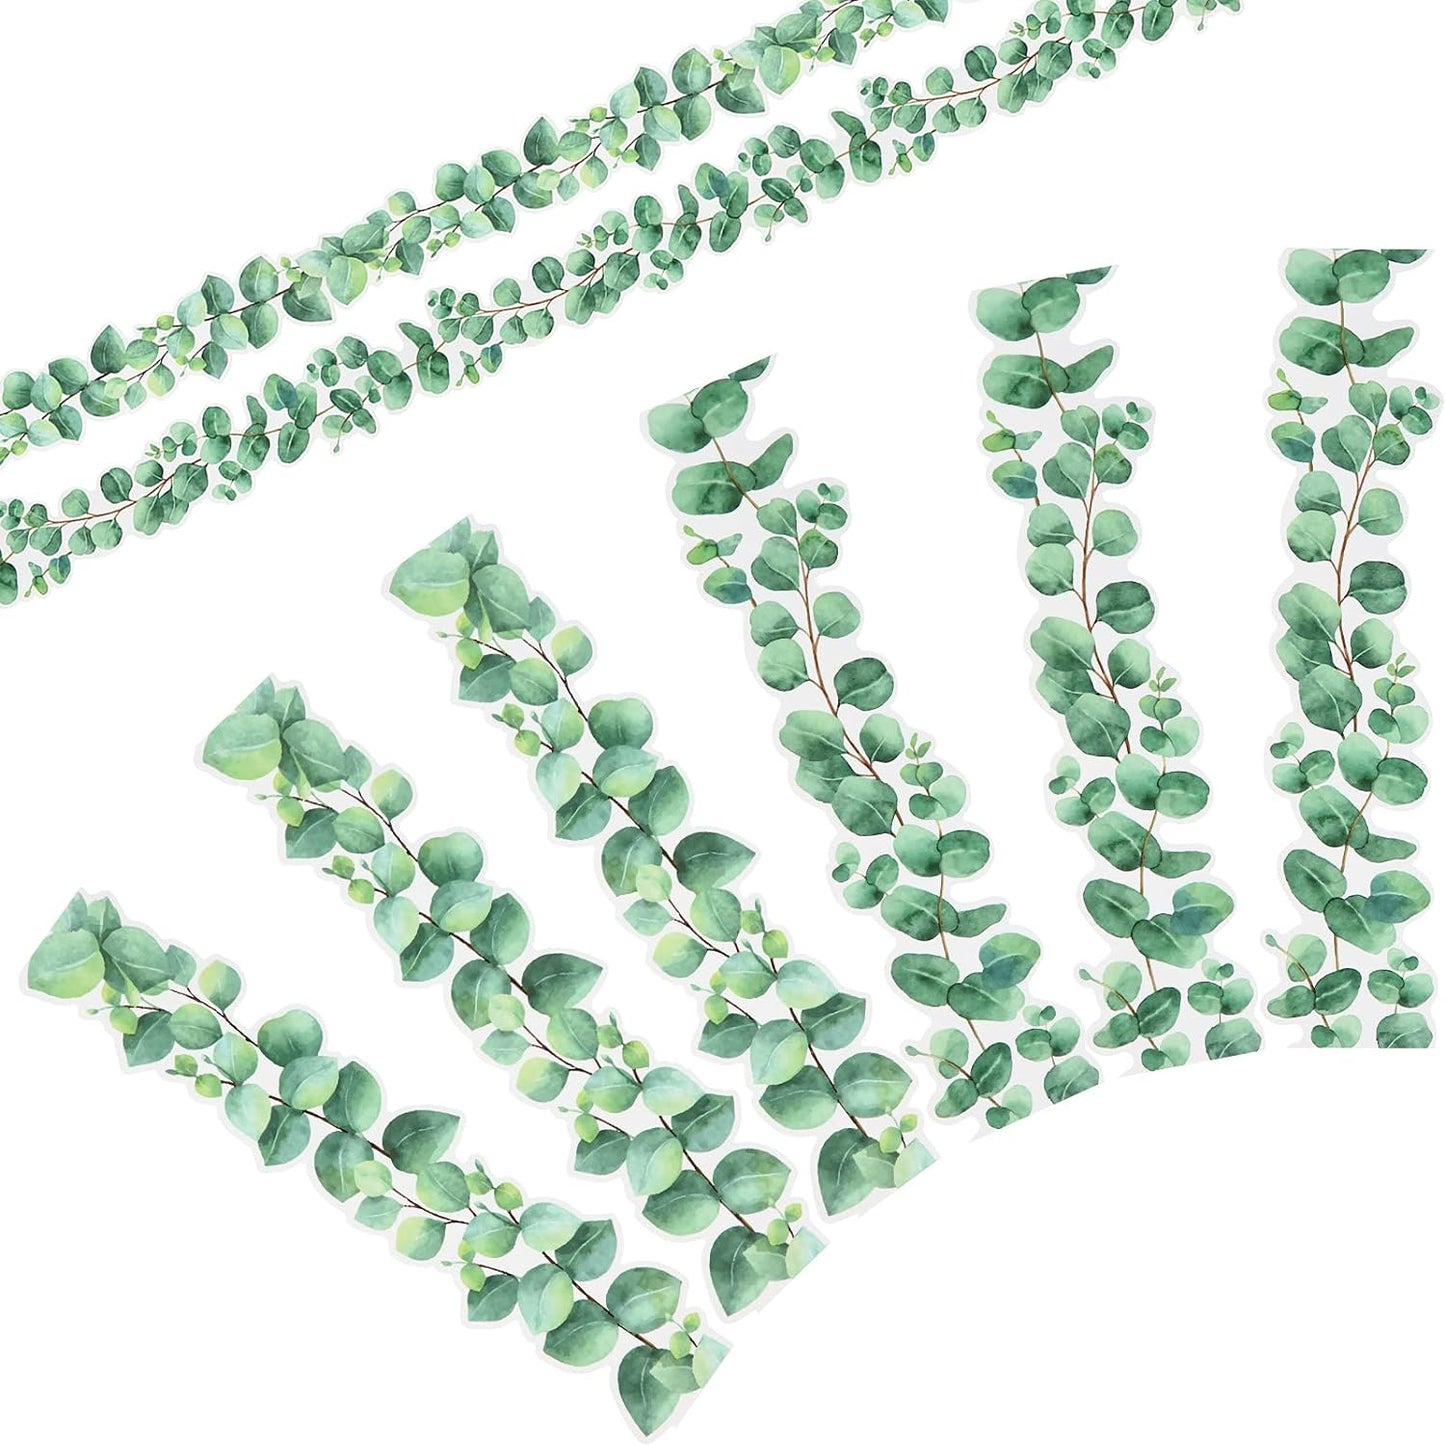 Borde de eucalipto tablón de anuncios aula Boho boletín decoración de pared borde decoración pegatinas de pared borde hojas tropicales verde decoración de pared (estilo eucalipto, 59 pies)